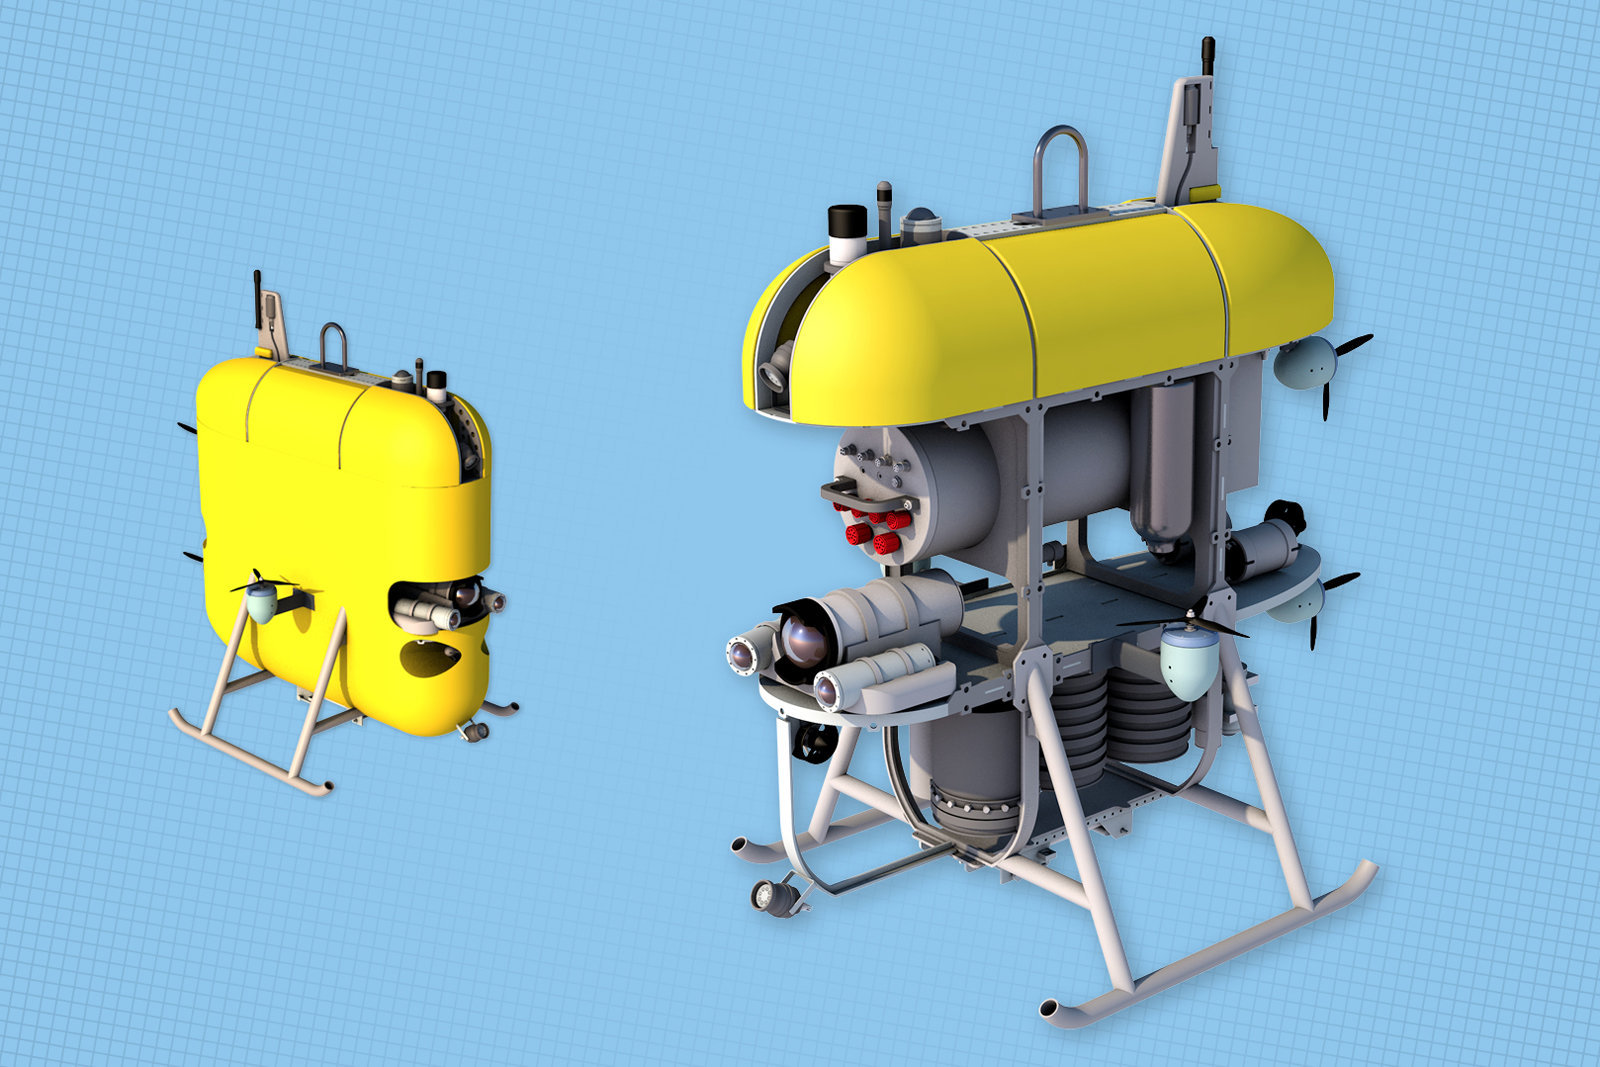 Balıkları korkutmadan fotoğraf çekebilen deniz robotu